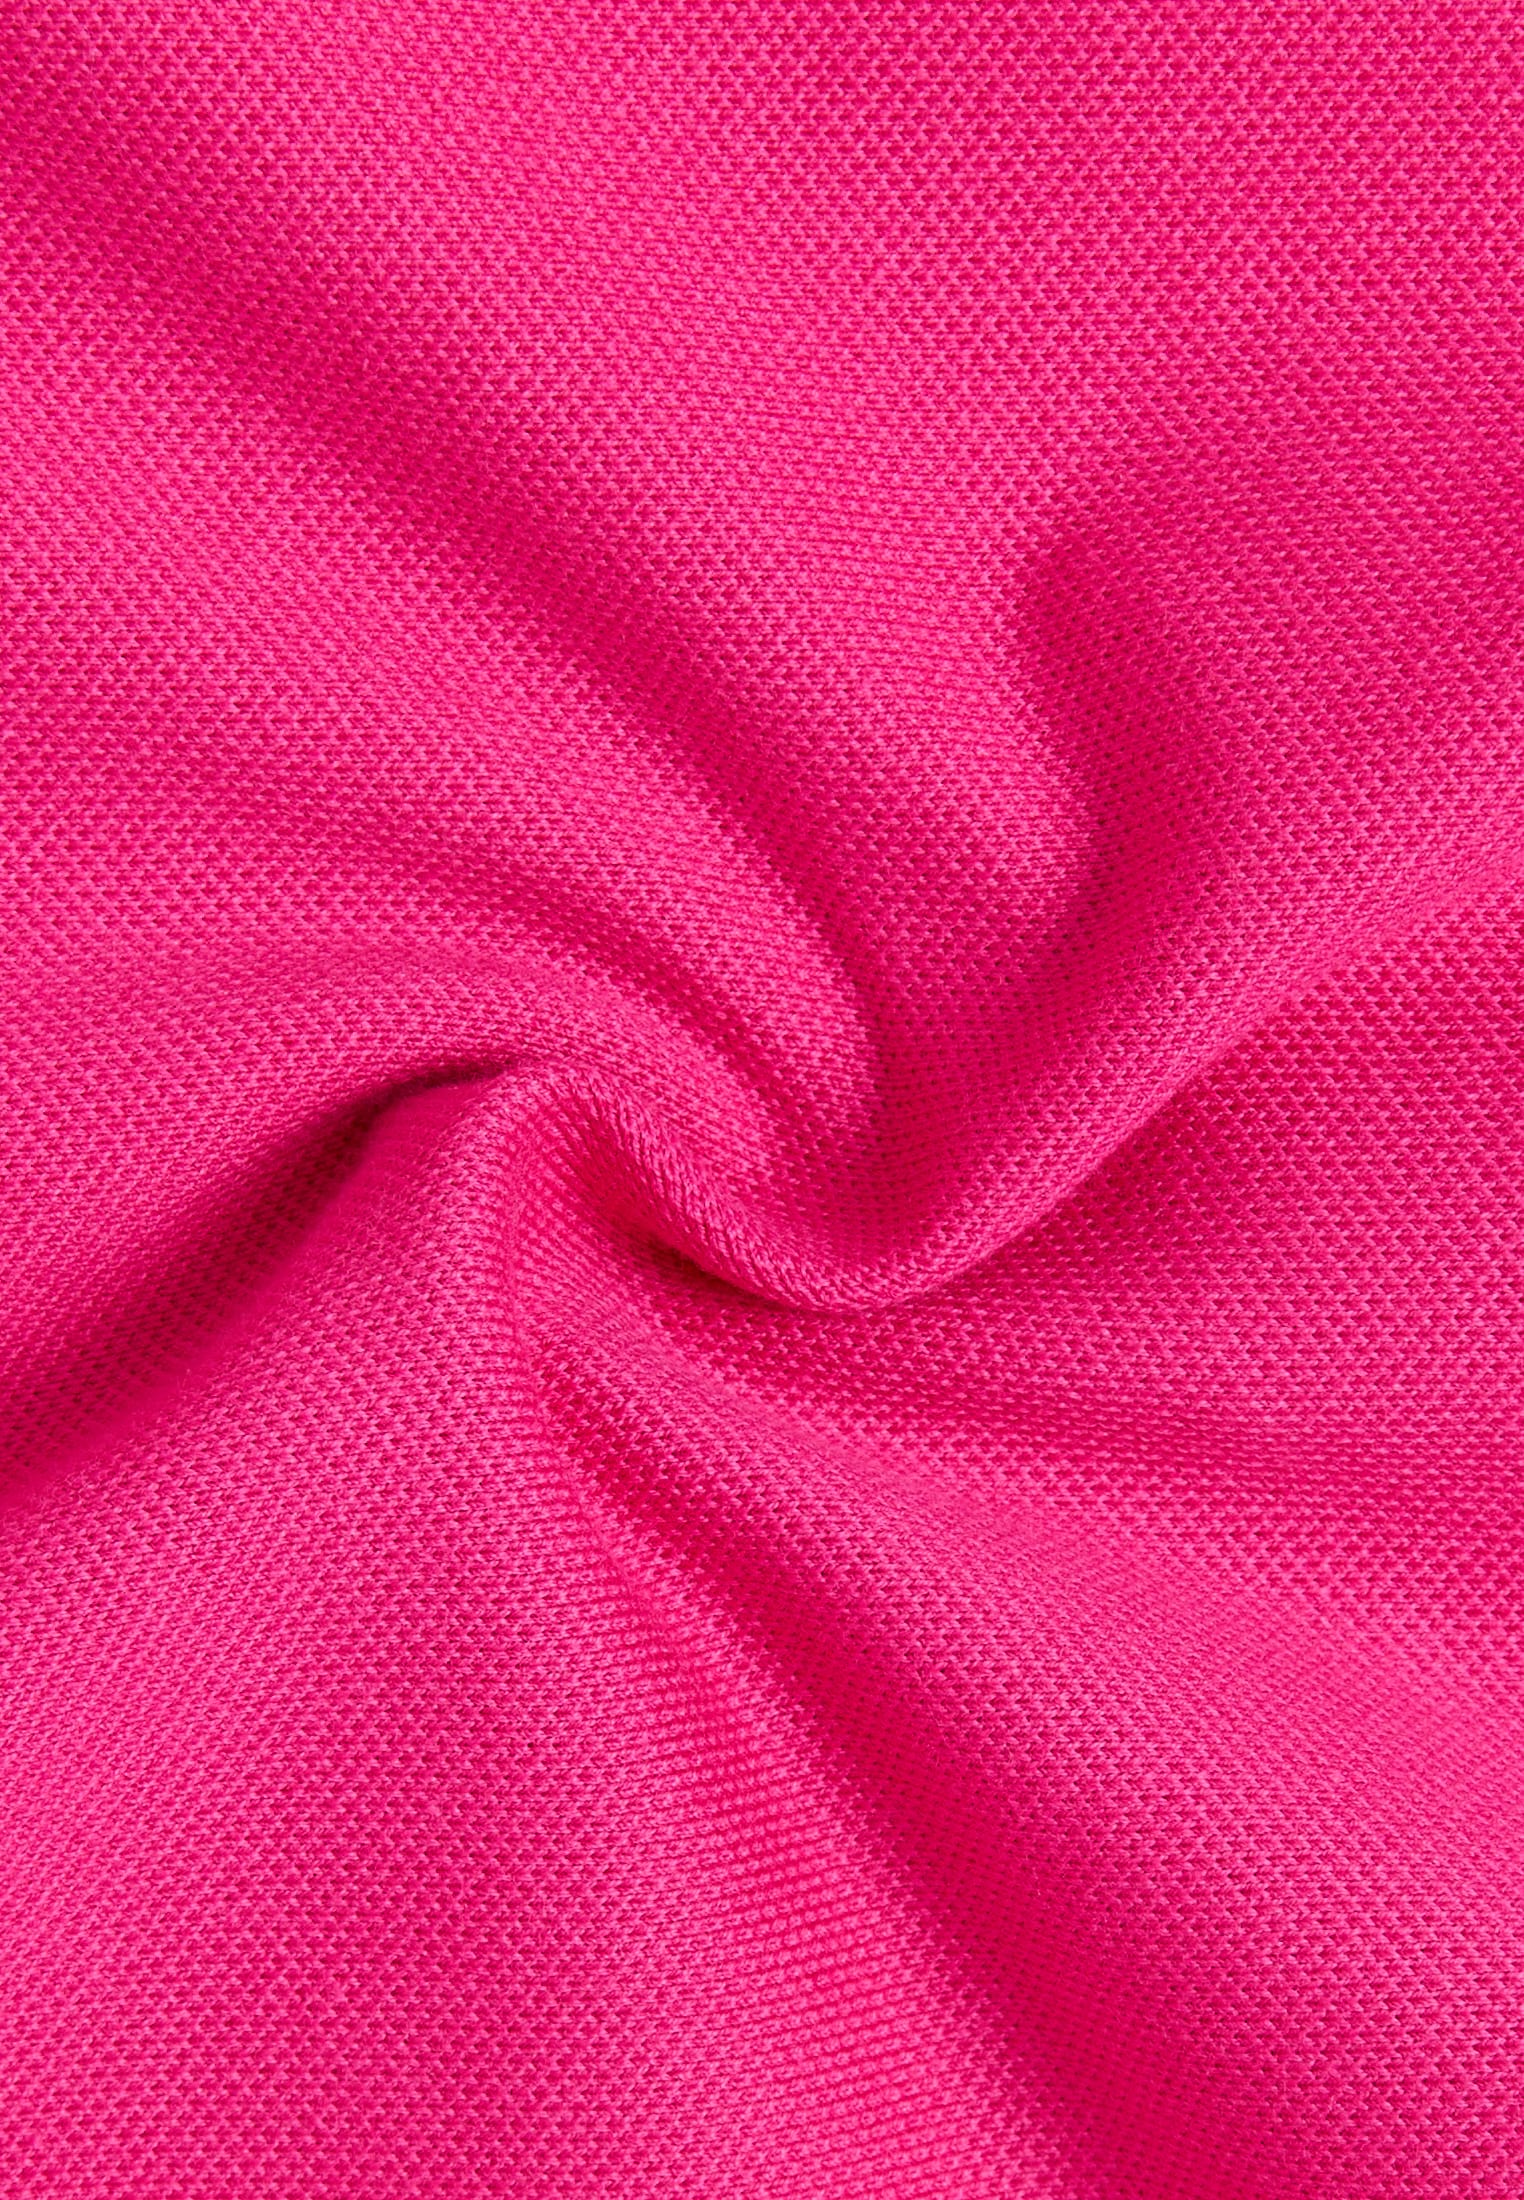 Poloshirt in pink unifarben